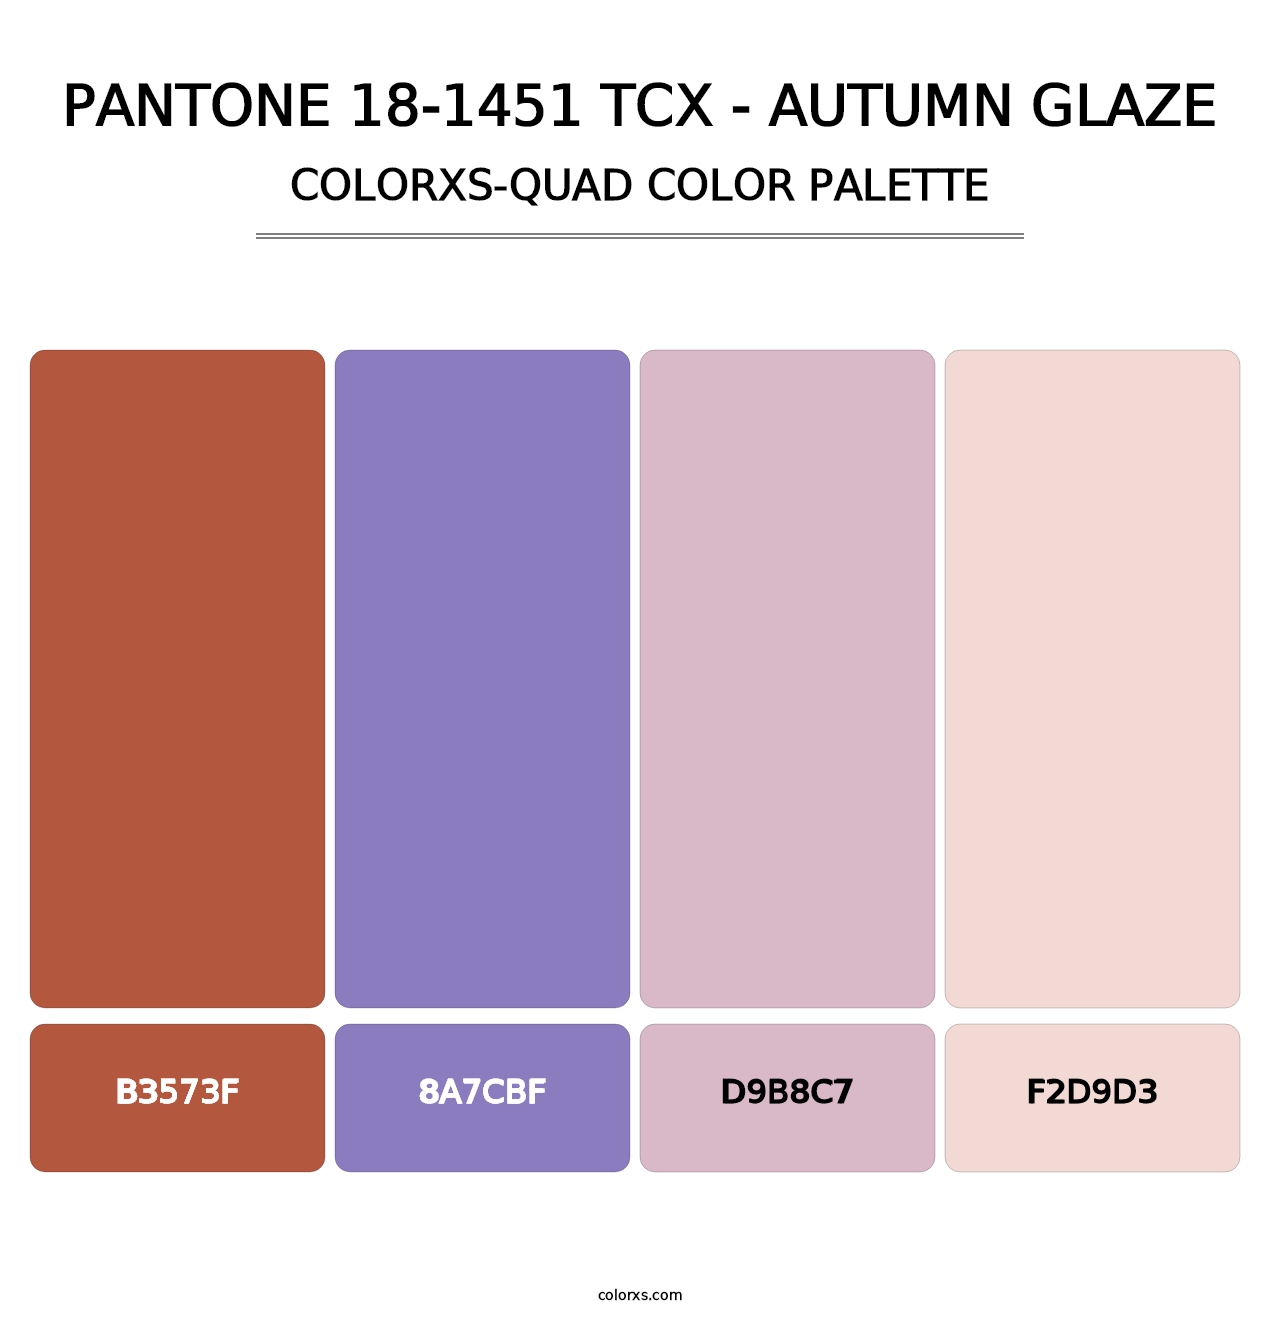 PANTONE 18-1451 TCX - Autumn Glaze - Colorxs Quad Palette